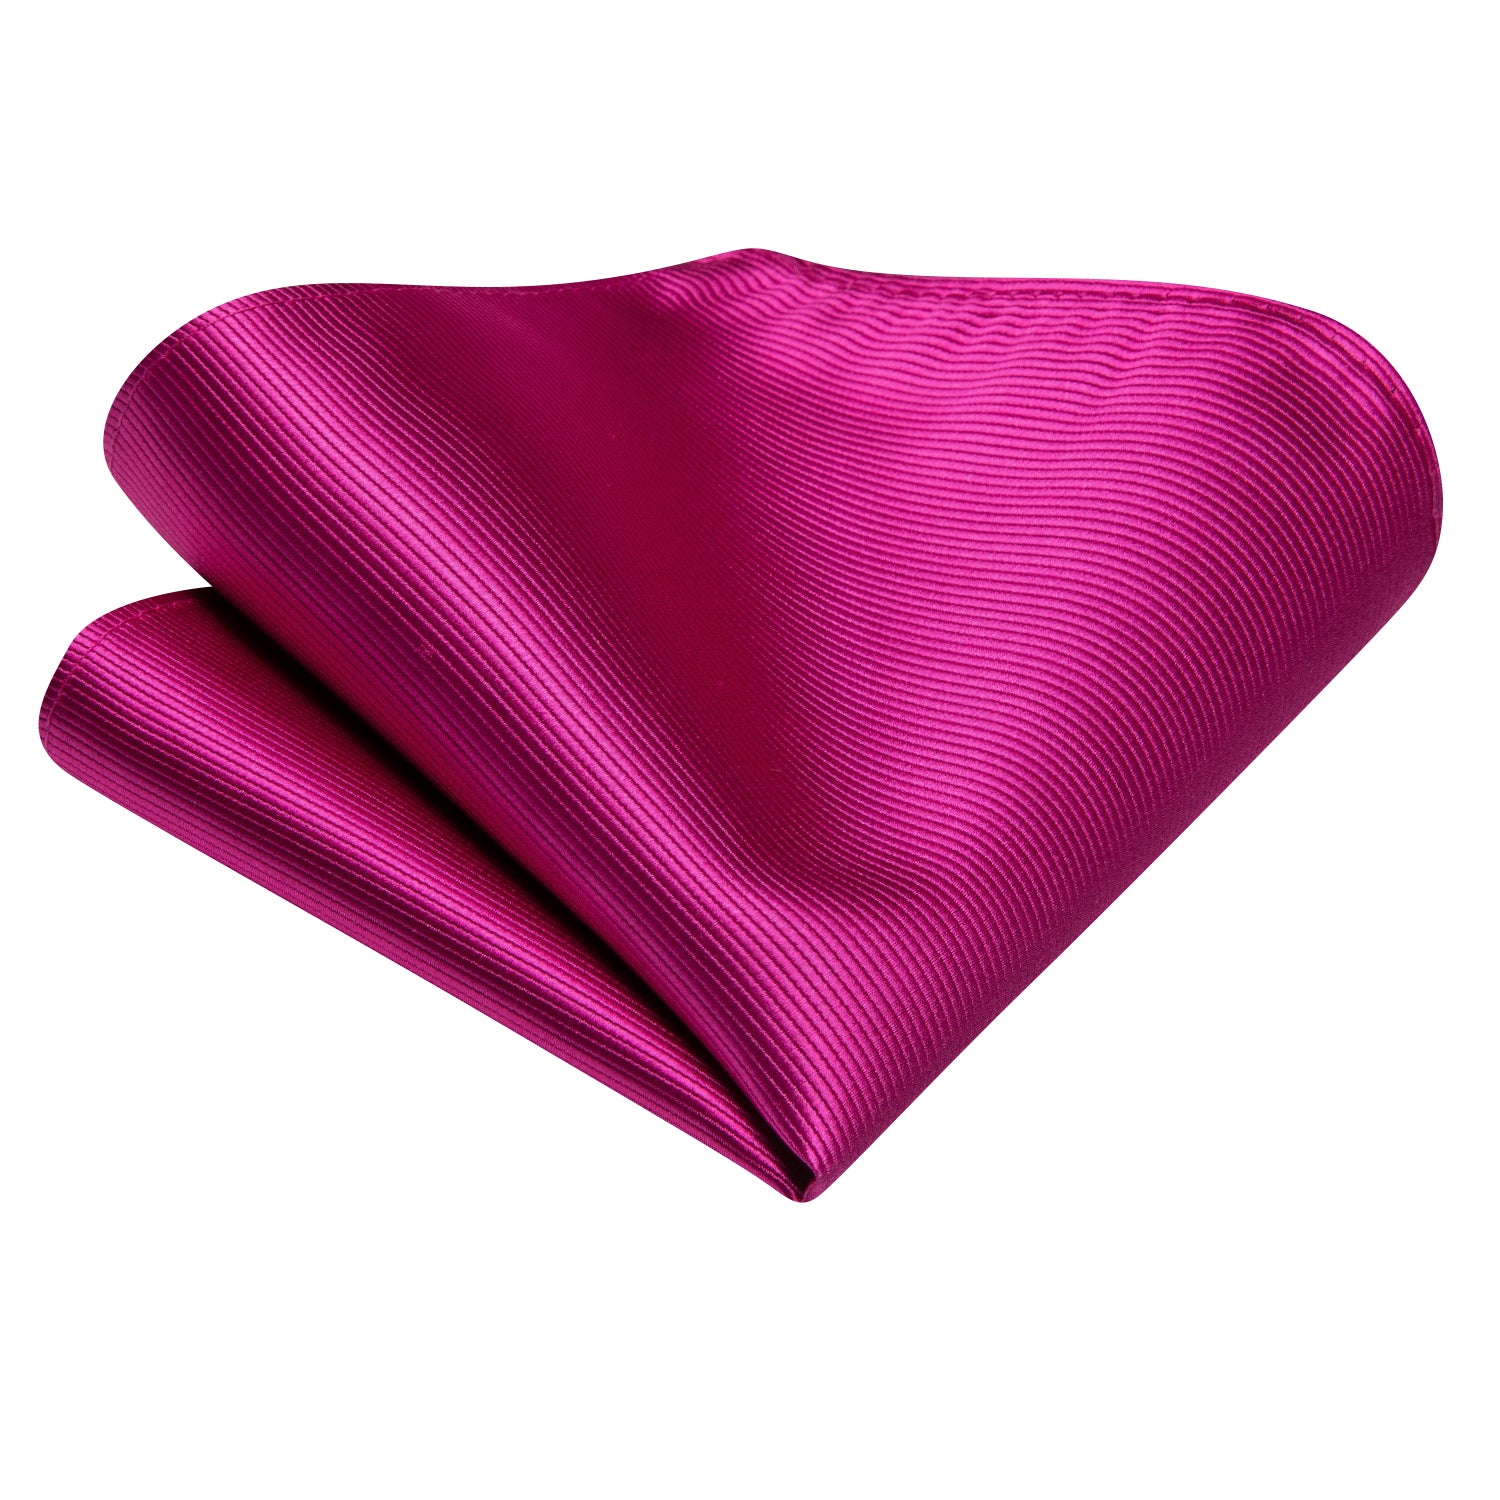 Hi-Tie Rose Pink Floral Men's Tie Pocket Square Cufflinks Set